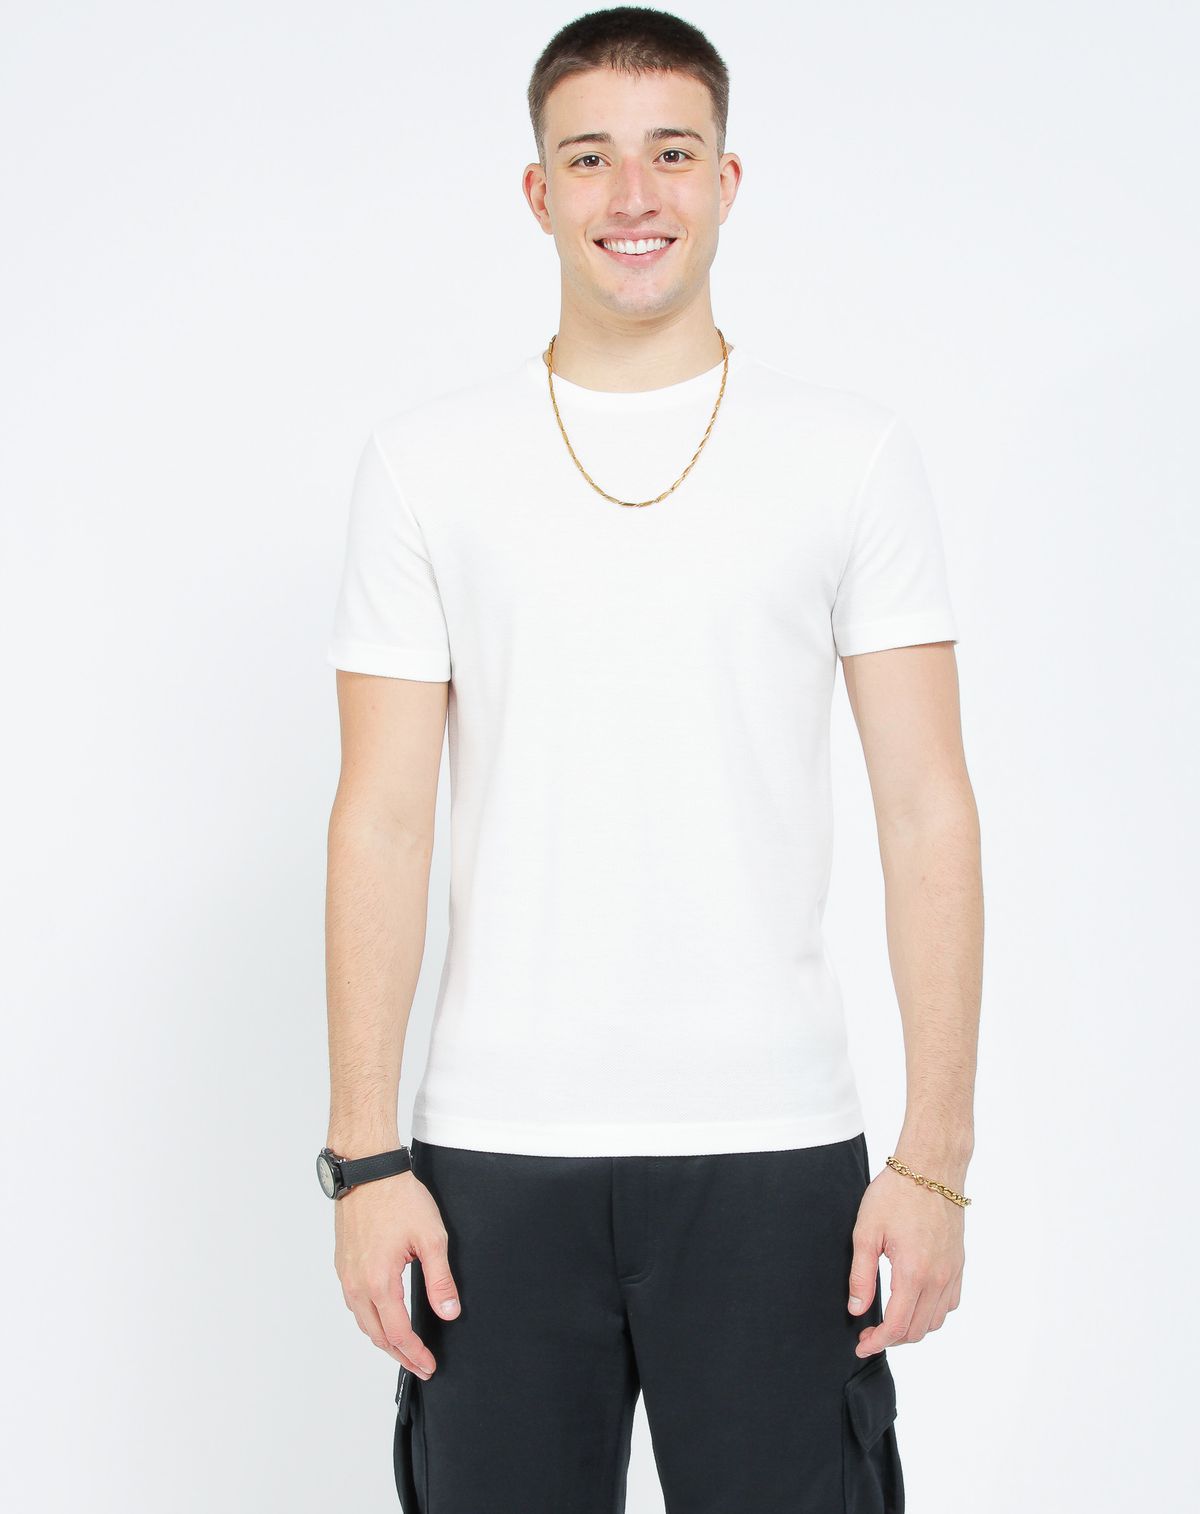 688075002-camiseta-manga-curta-masculina-texturizada-bolso-off-white-m-e3e